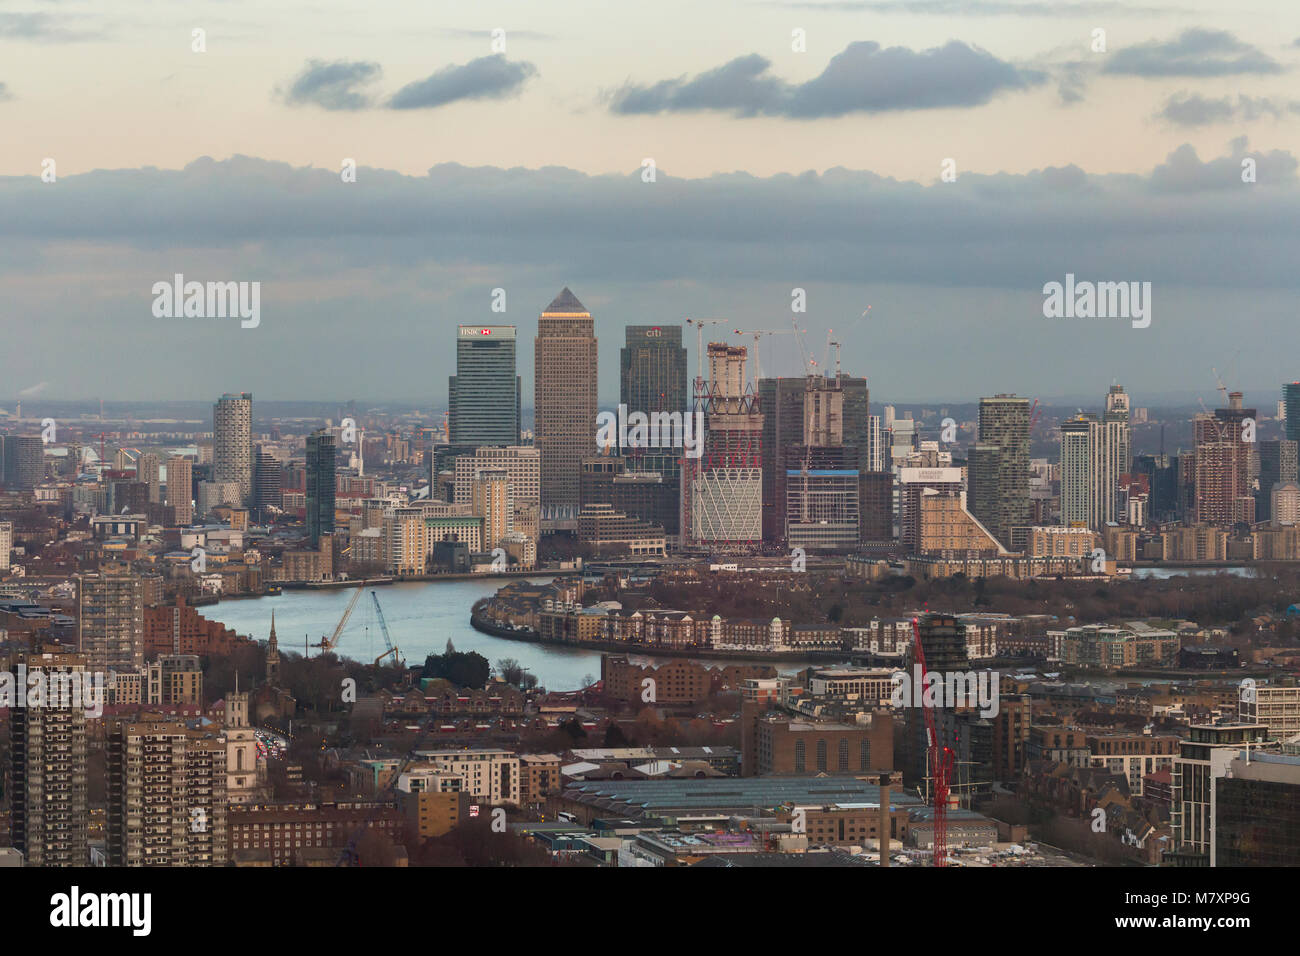 Londres, UK - JAN 2018 : Vue aérienne de gratte-ciel de Canary Wharf avec Thames en premier plan Banque D'Images